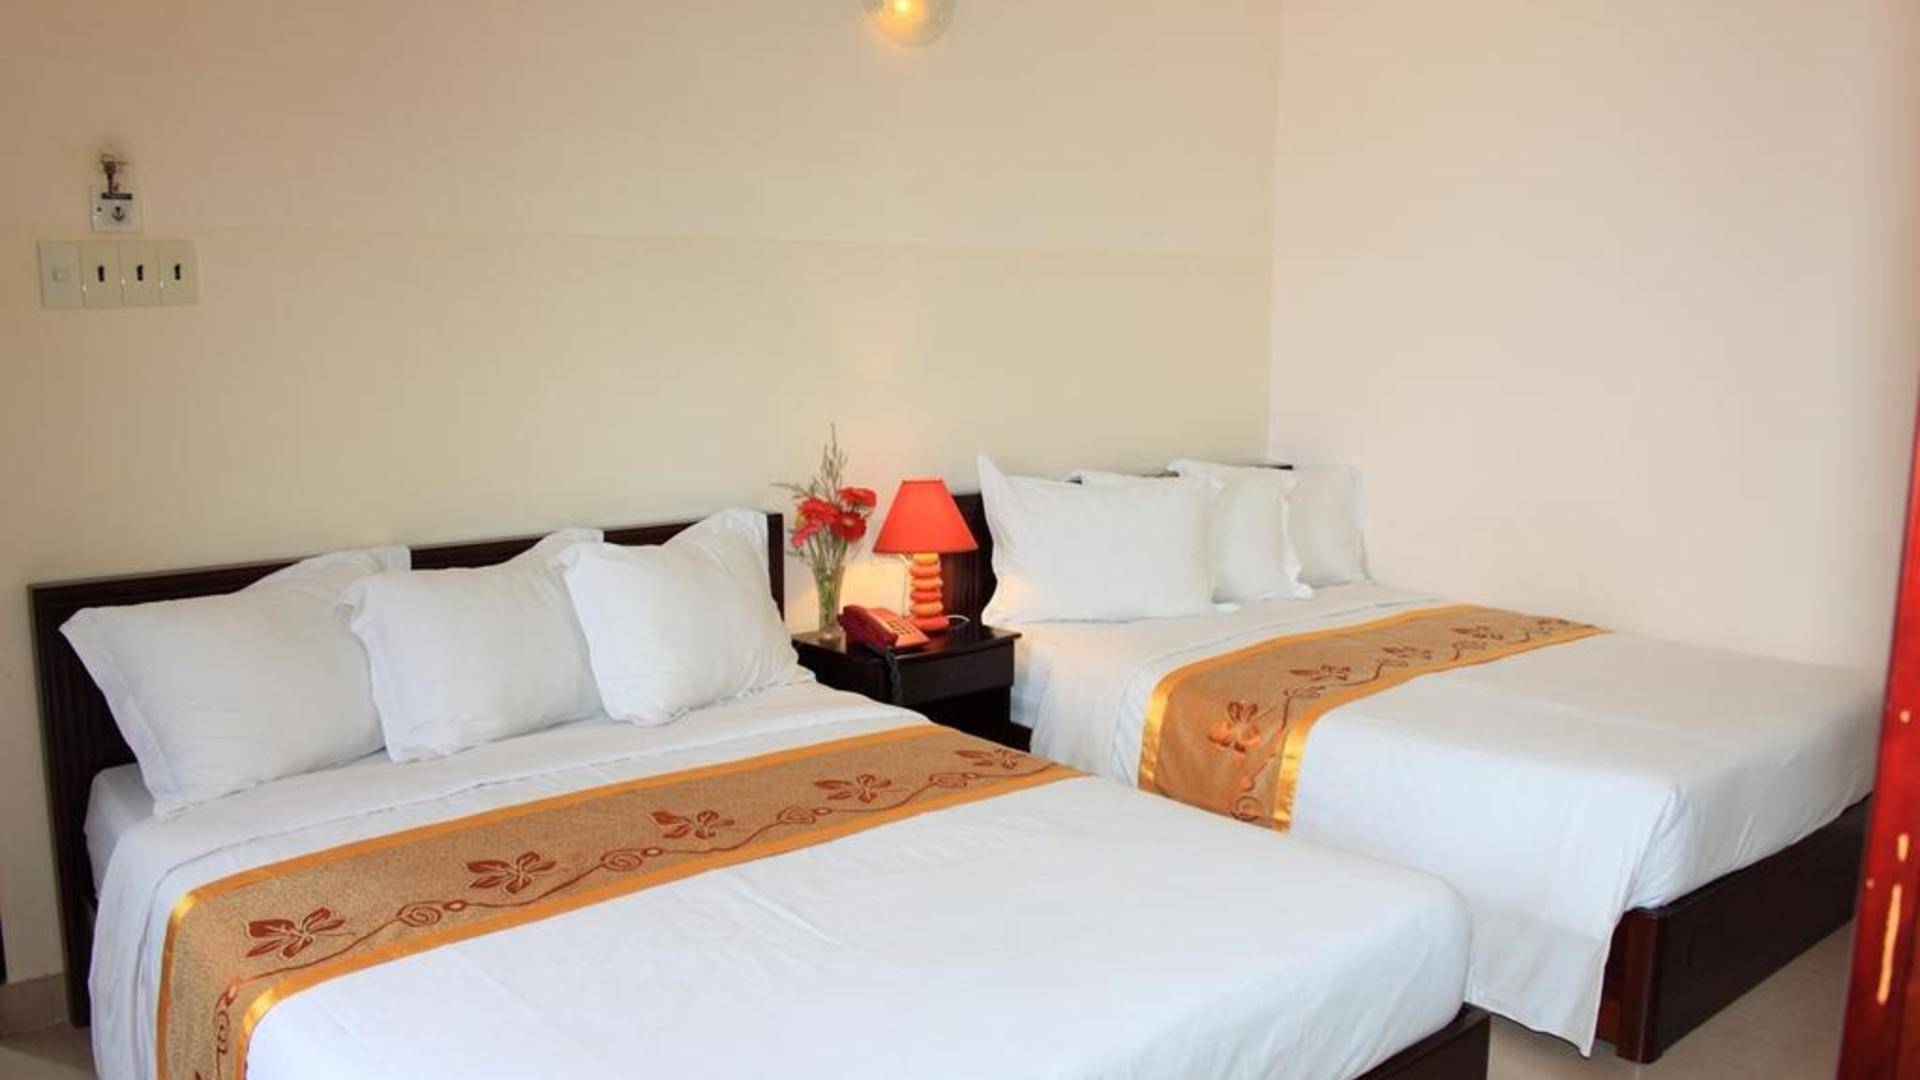 Phuong nhung hotel 2* - вьетнам, фантхьет - отели | пегас туристик